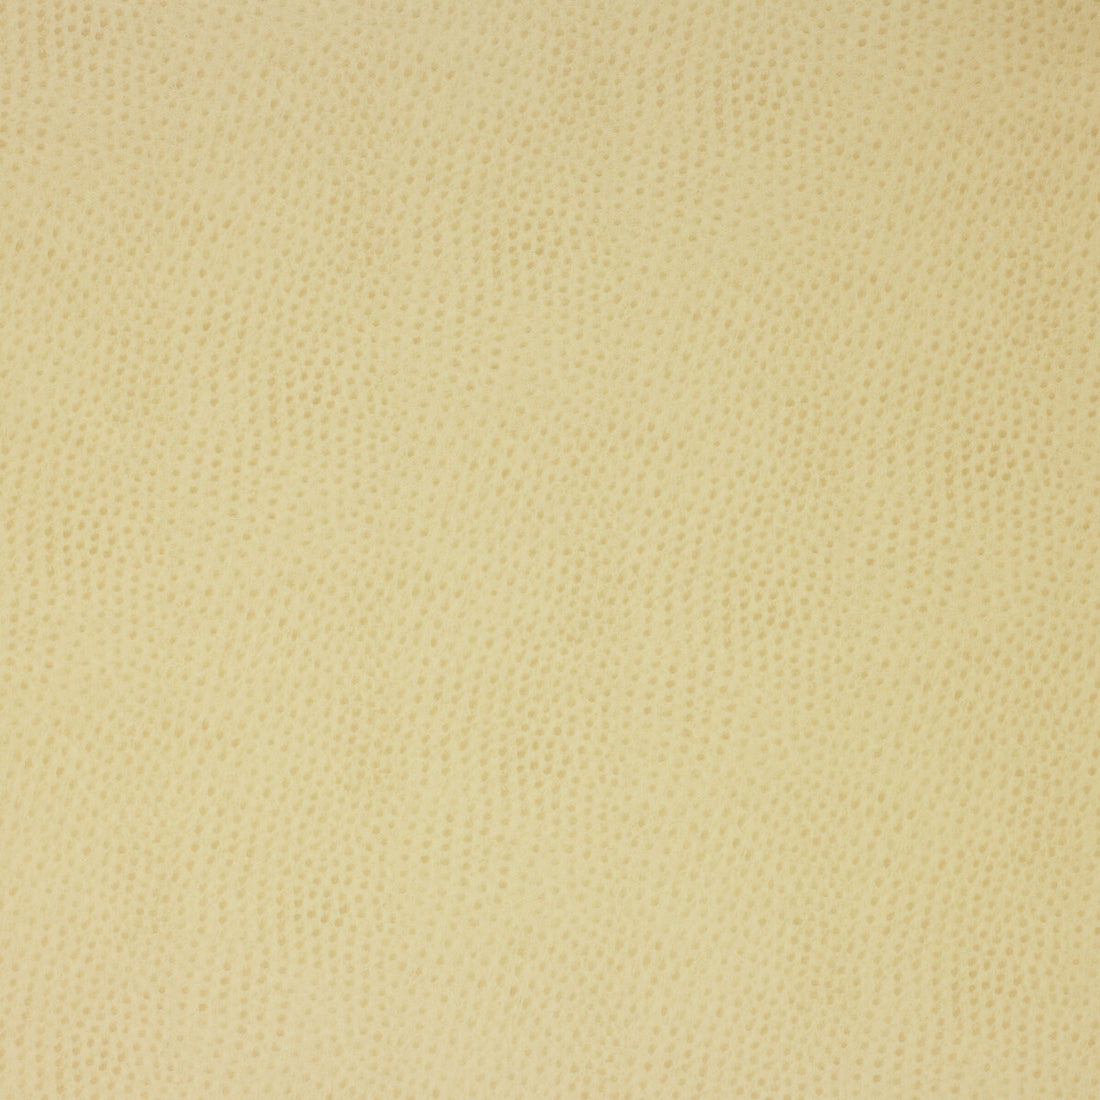 Kravet Design fabric in delaney-116 color - pattern DELANEY.116.0 - by Kravet Design